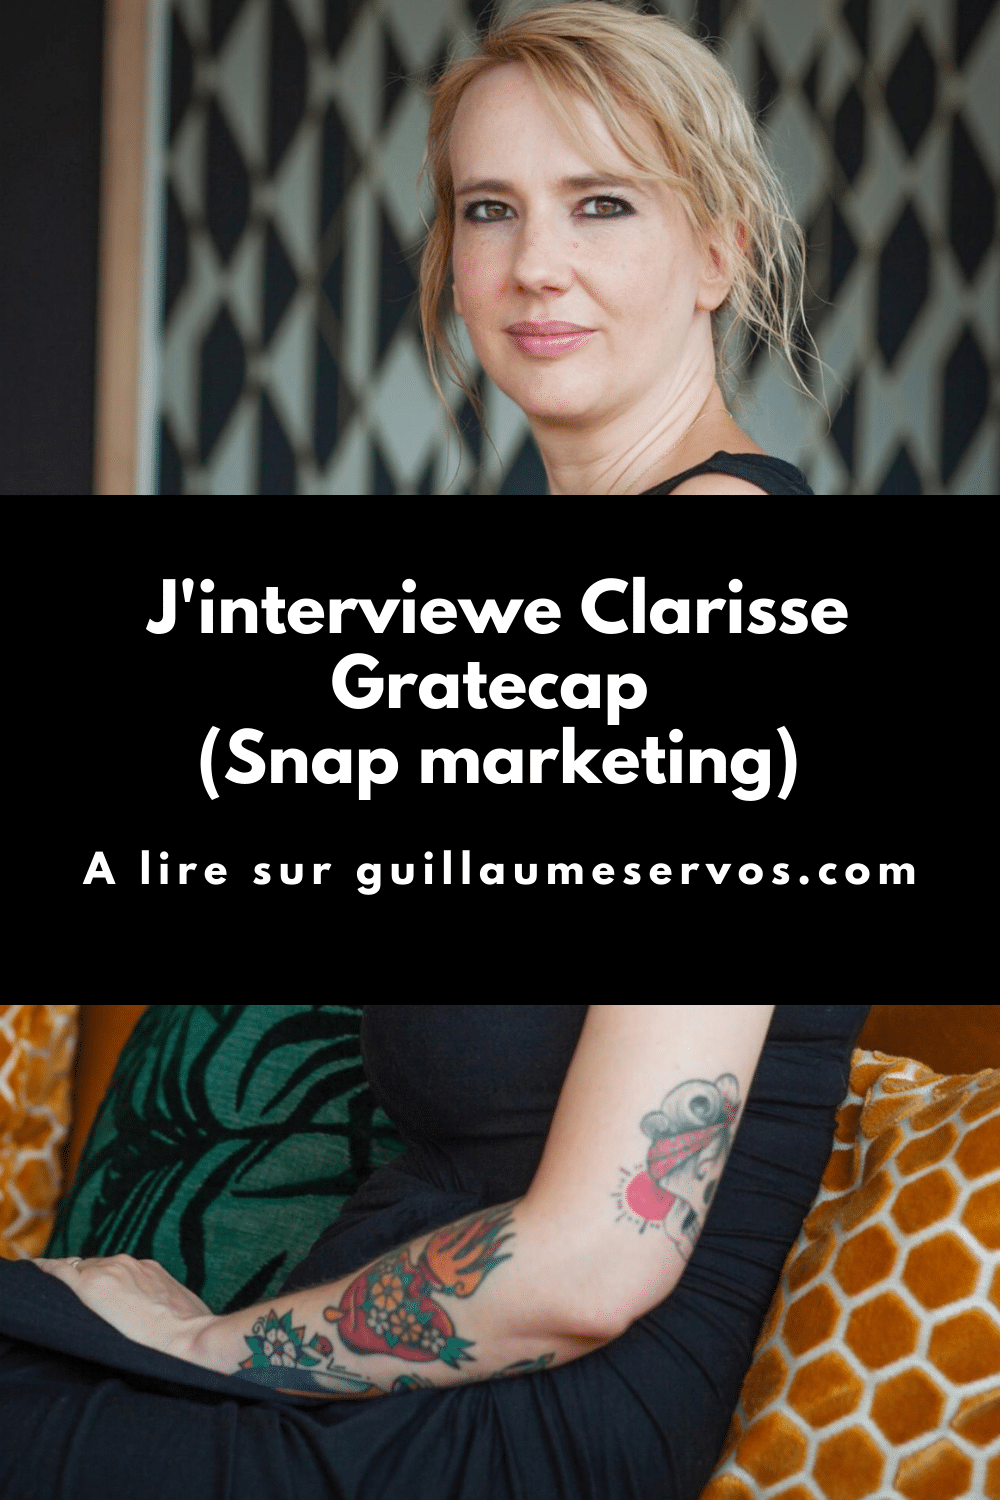 Découvre mon interview avec Clarisse Gratecap, entrepreneure lyonnaise dans la communication. Au menu : son rapport à l'entrepreneuriat, au blogging, aux réseaux sociaux et au voyage.